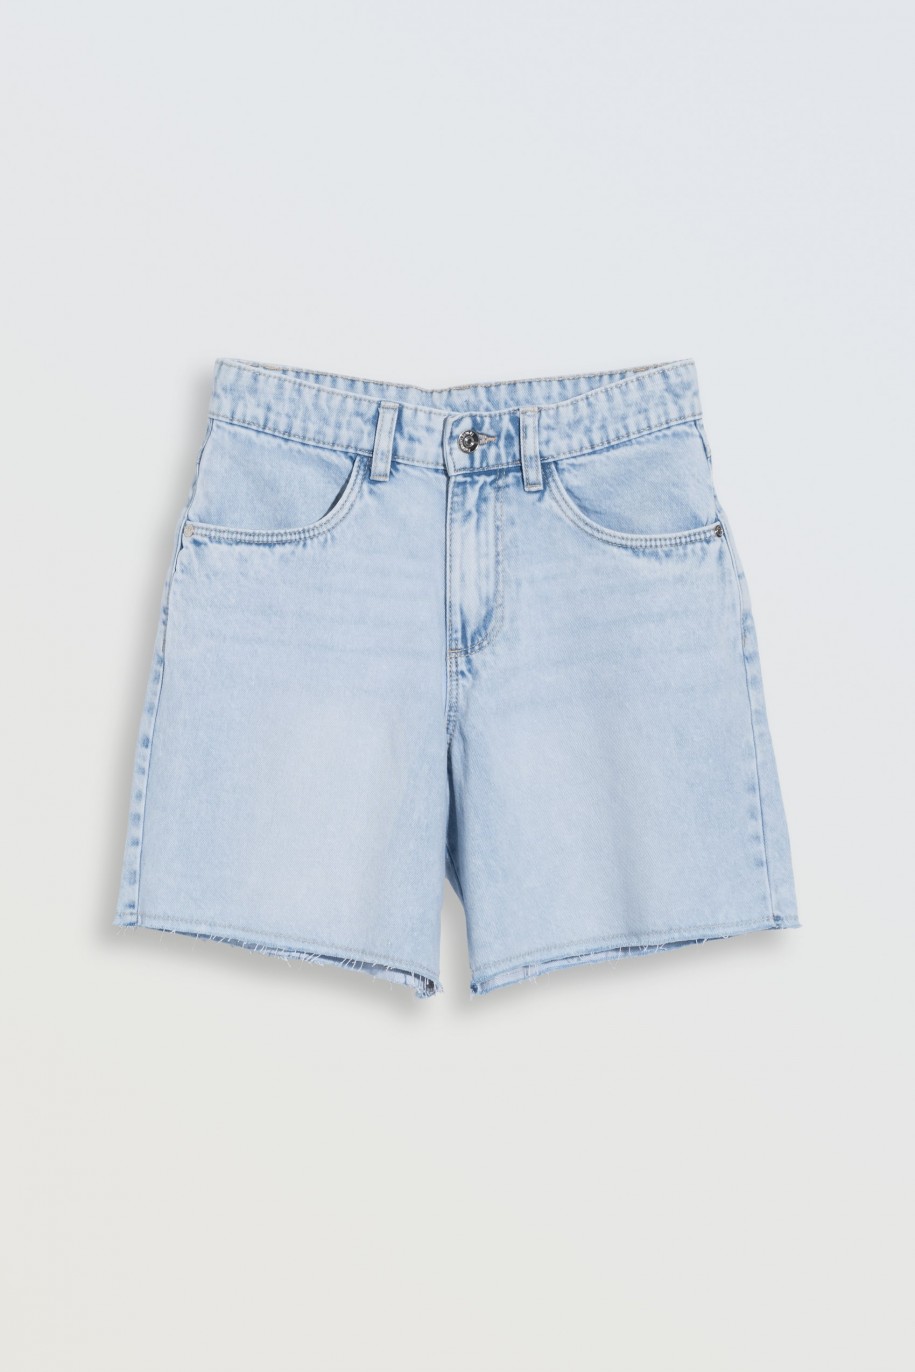 Jasnoniebieskie krótkie spodenki jeansowe - 46569